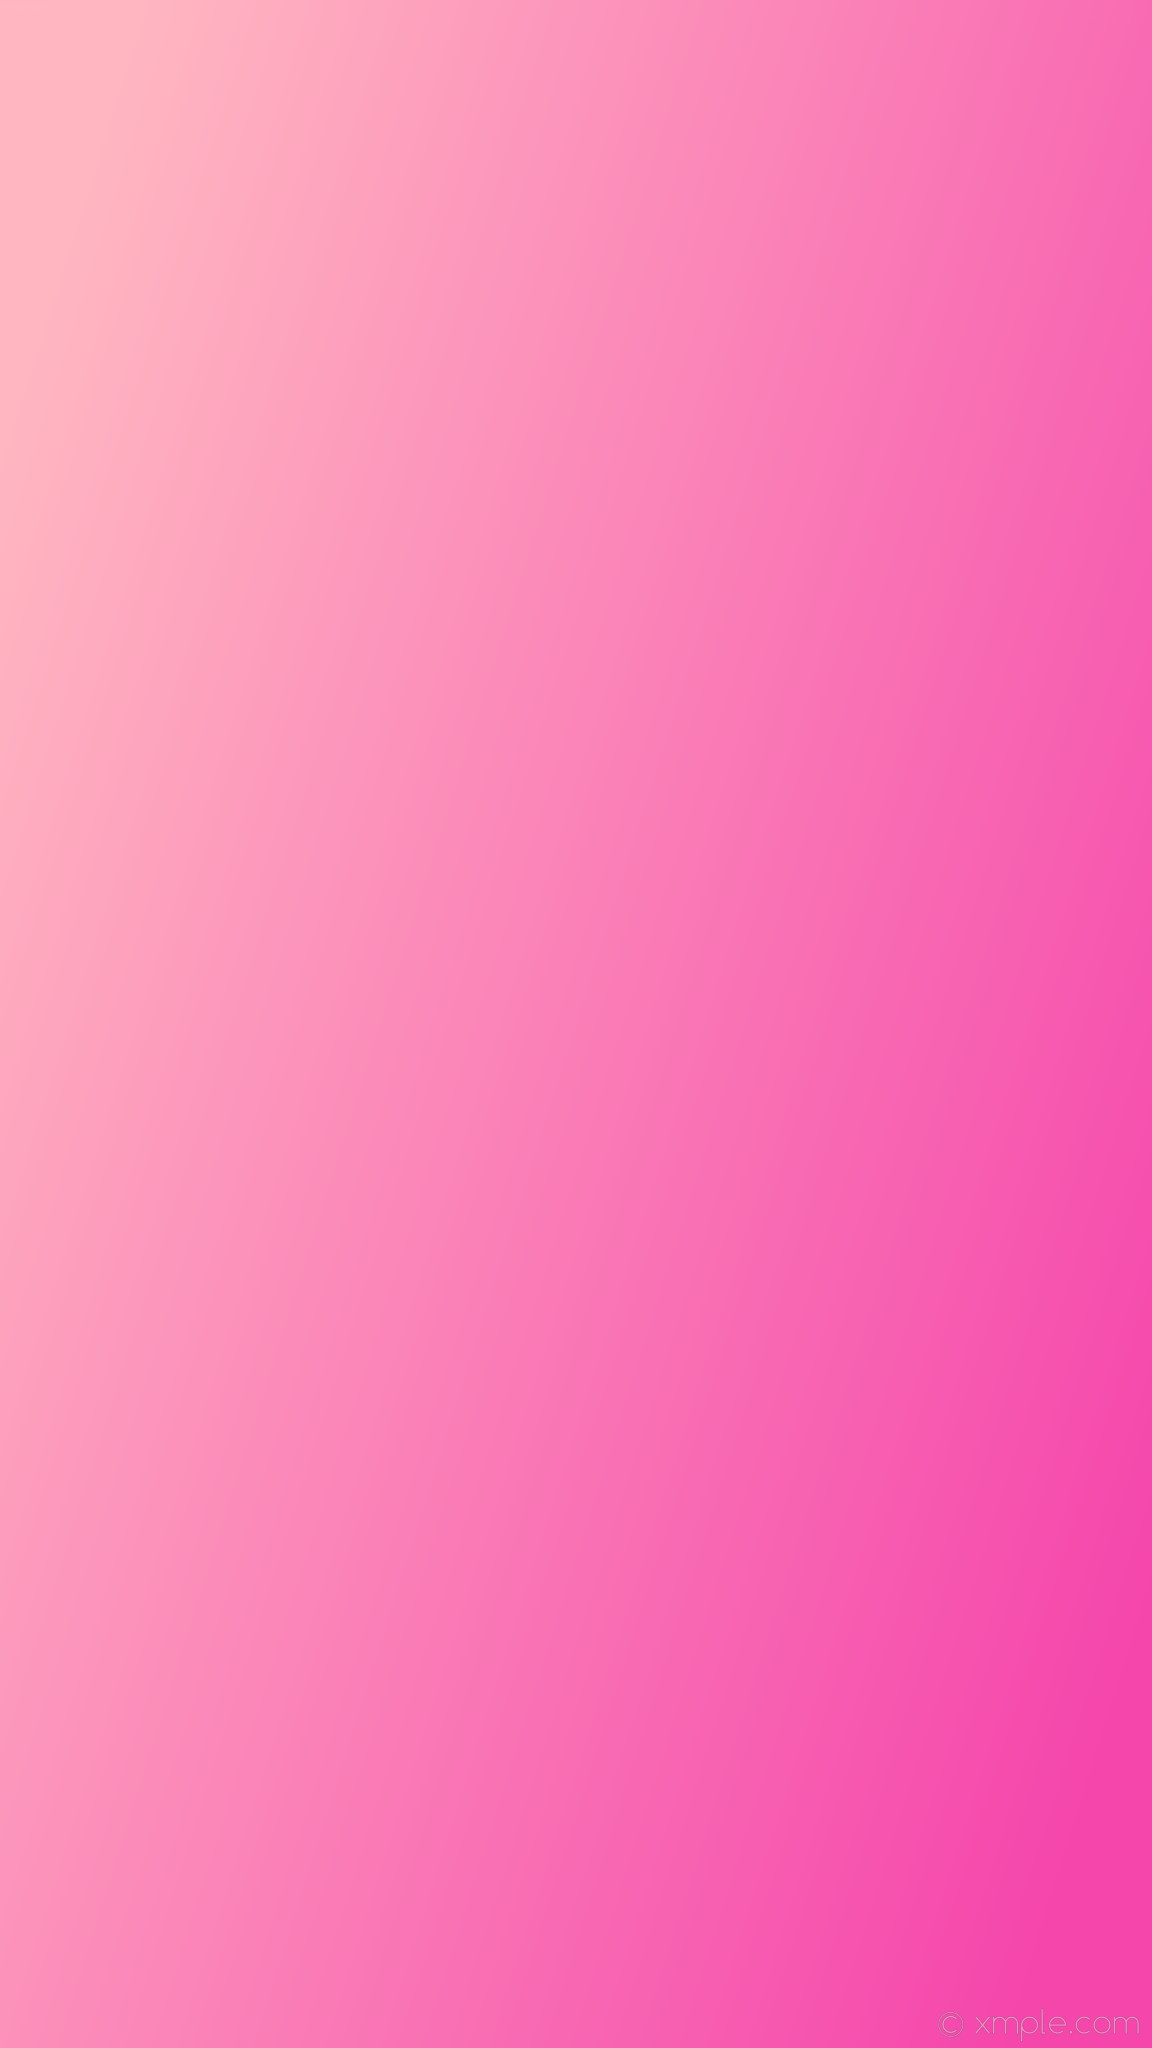 1152x2048 wallpaper pink linear gradient light pink #f546ac #ffb6c1 315Â°